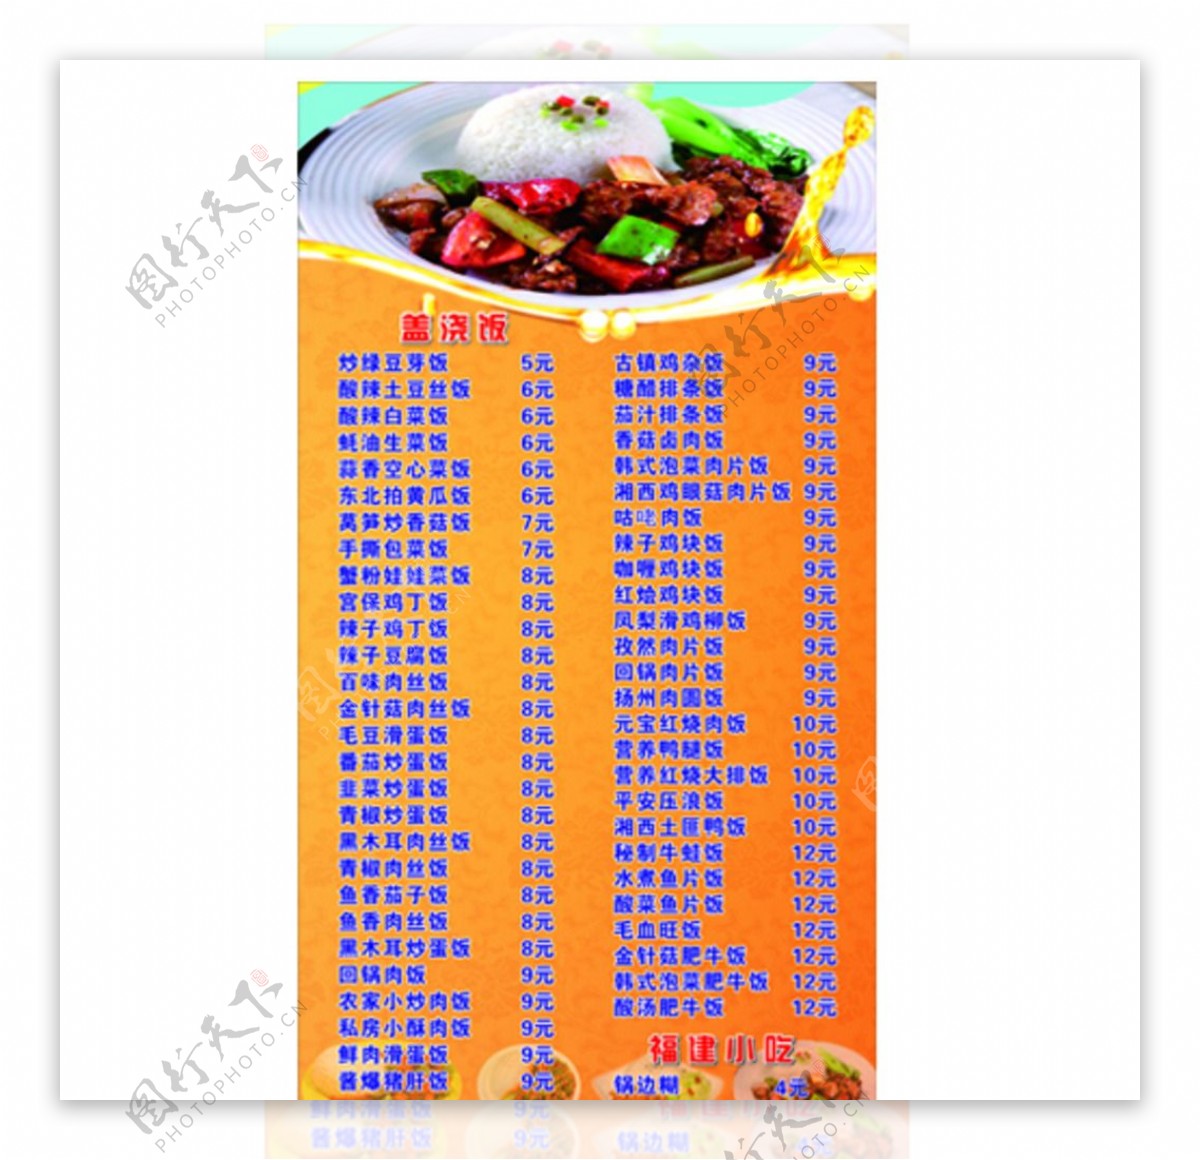 餐厅饭店盖浇饭价格表菜单设计图片下载 - 觅知网